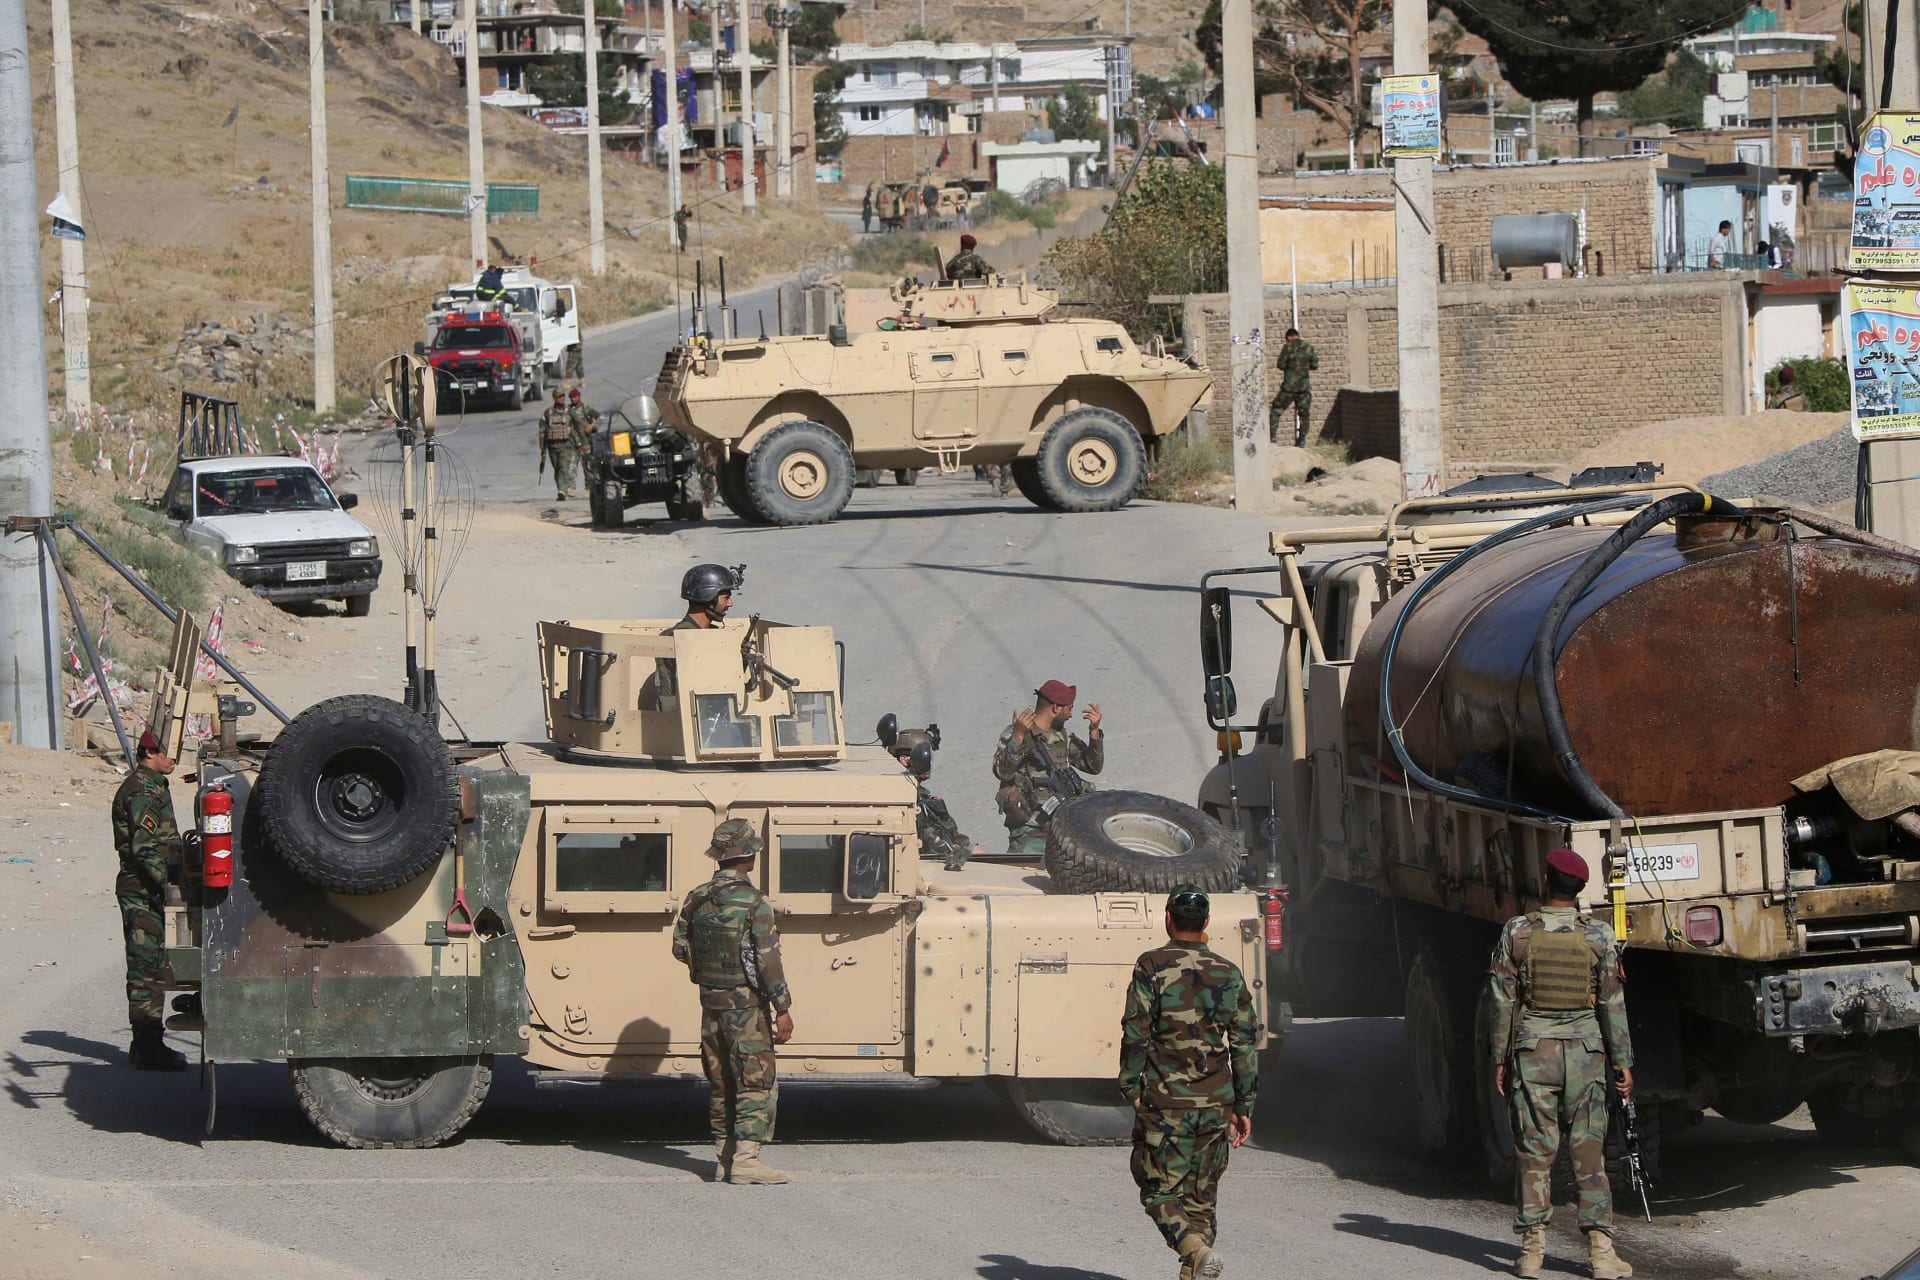 واشنطن بوست: المكافآت الروسية لمقاتلي طالبان أدت إلى مقتل جنود أمريكيين بأفغانستان